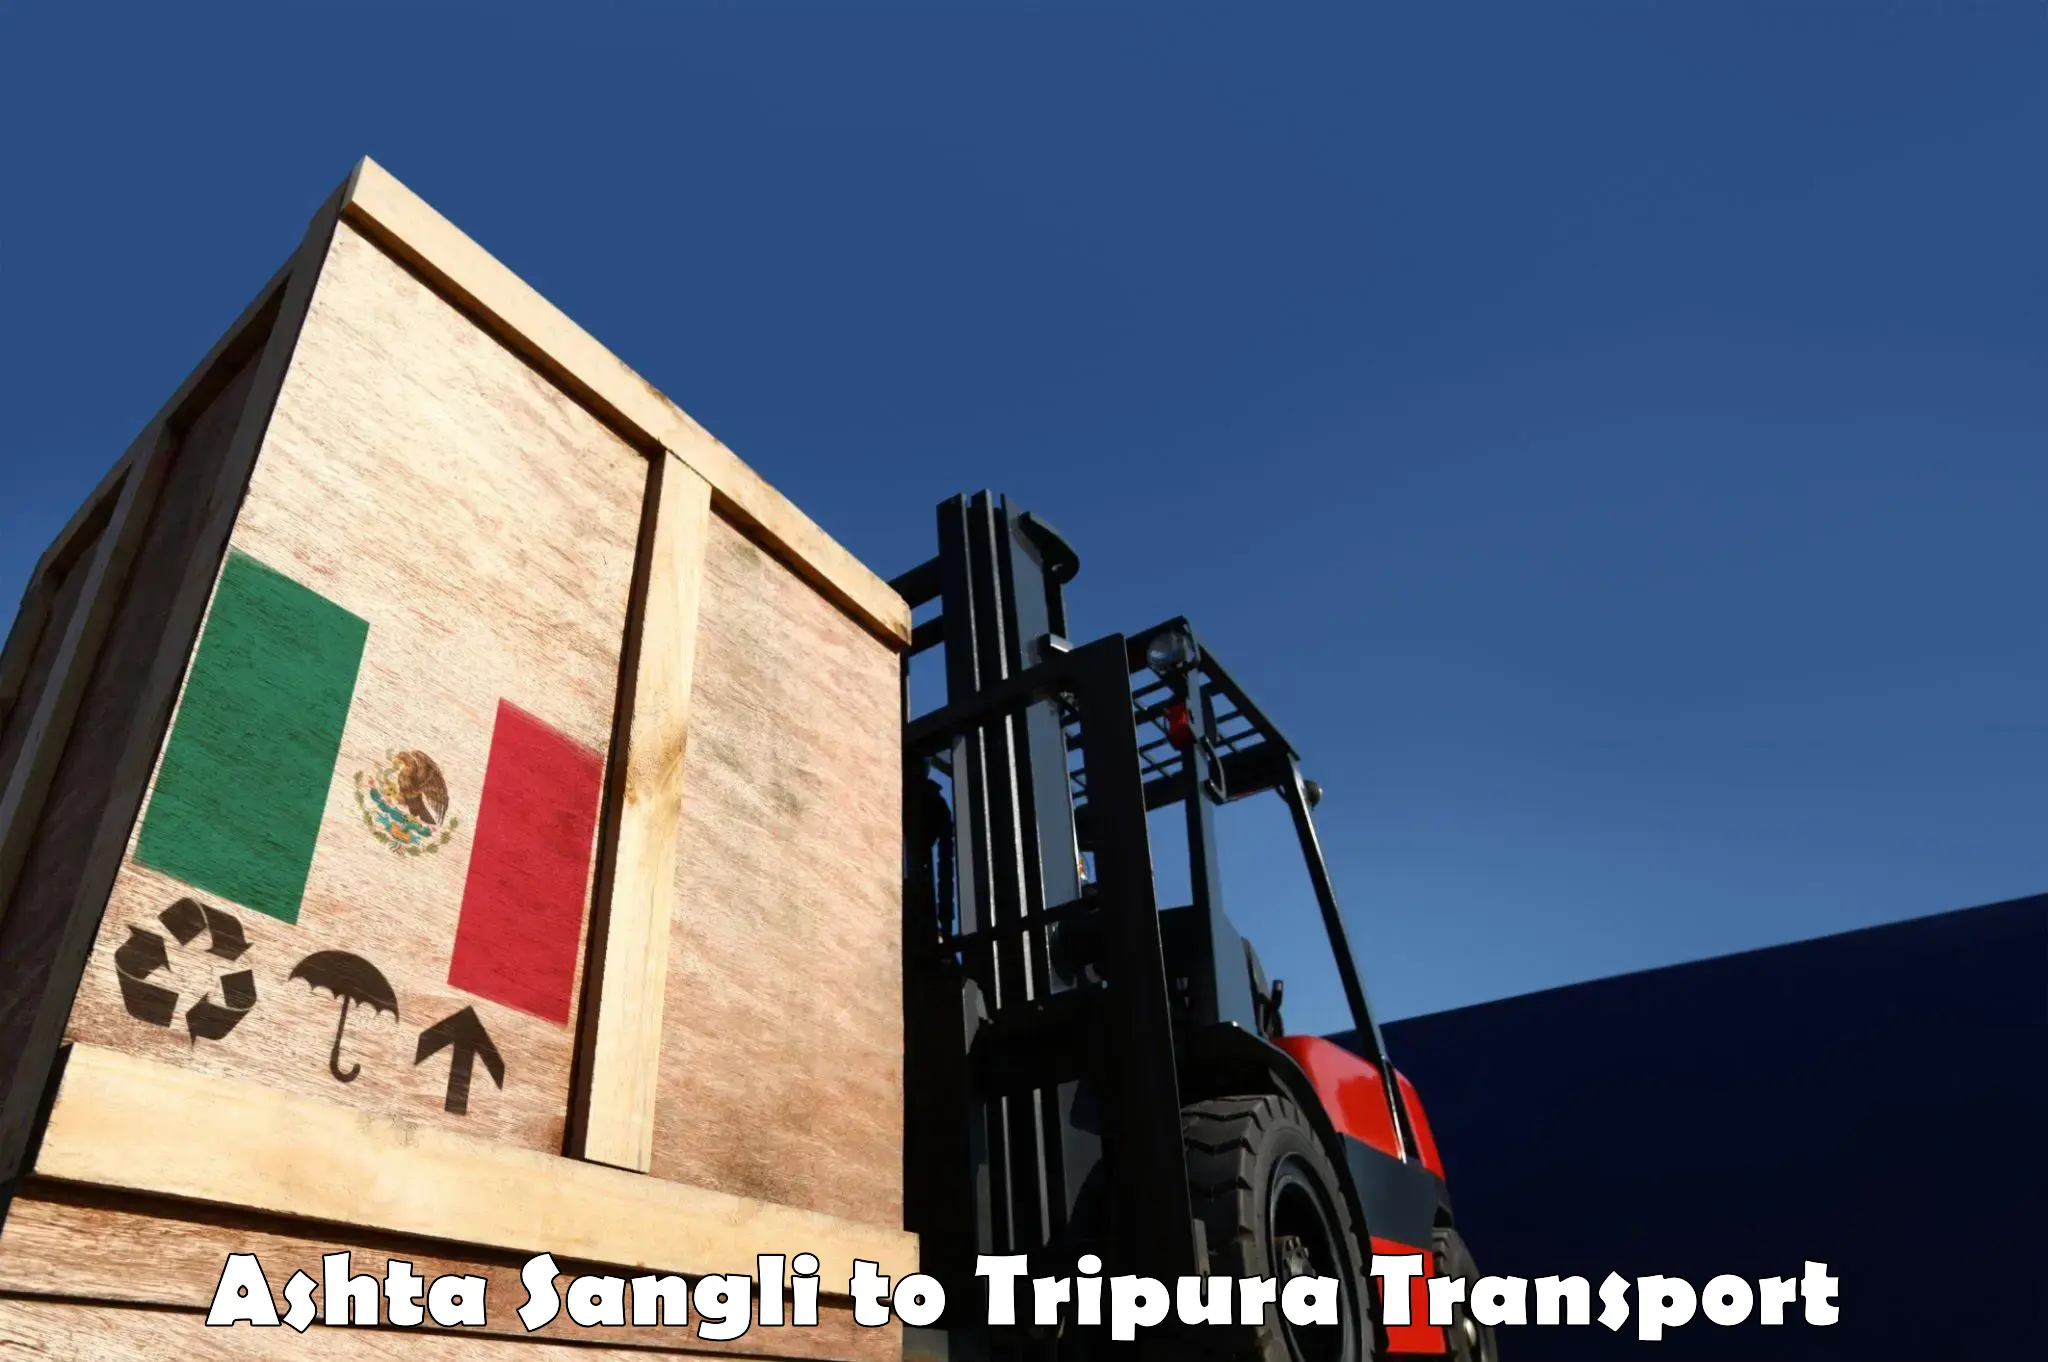 Pick up transport service Ashta Sangli to Udaipur Tripura